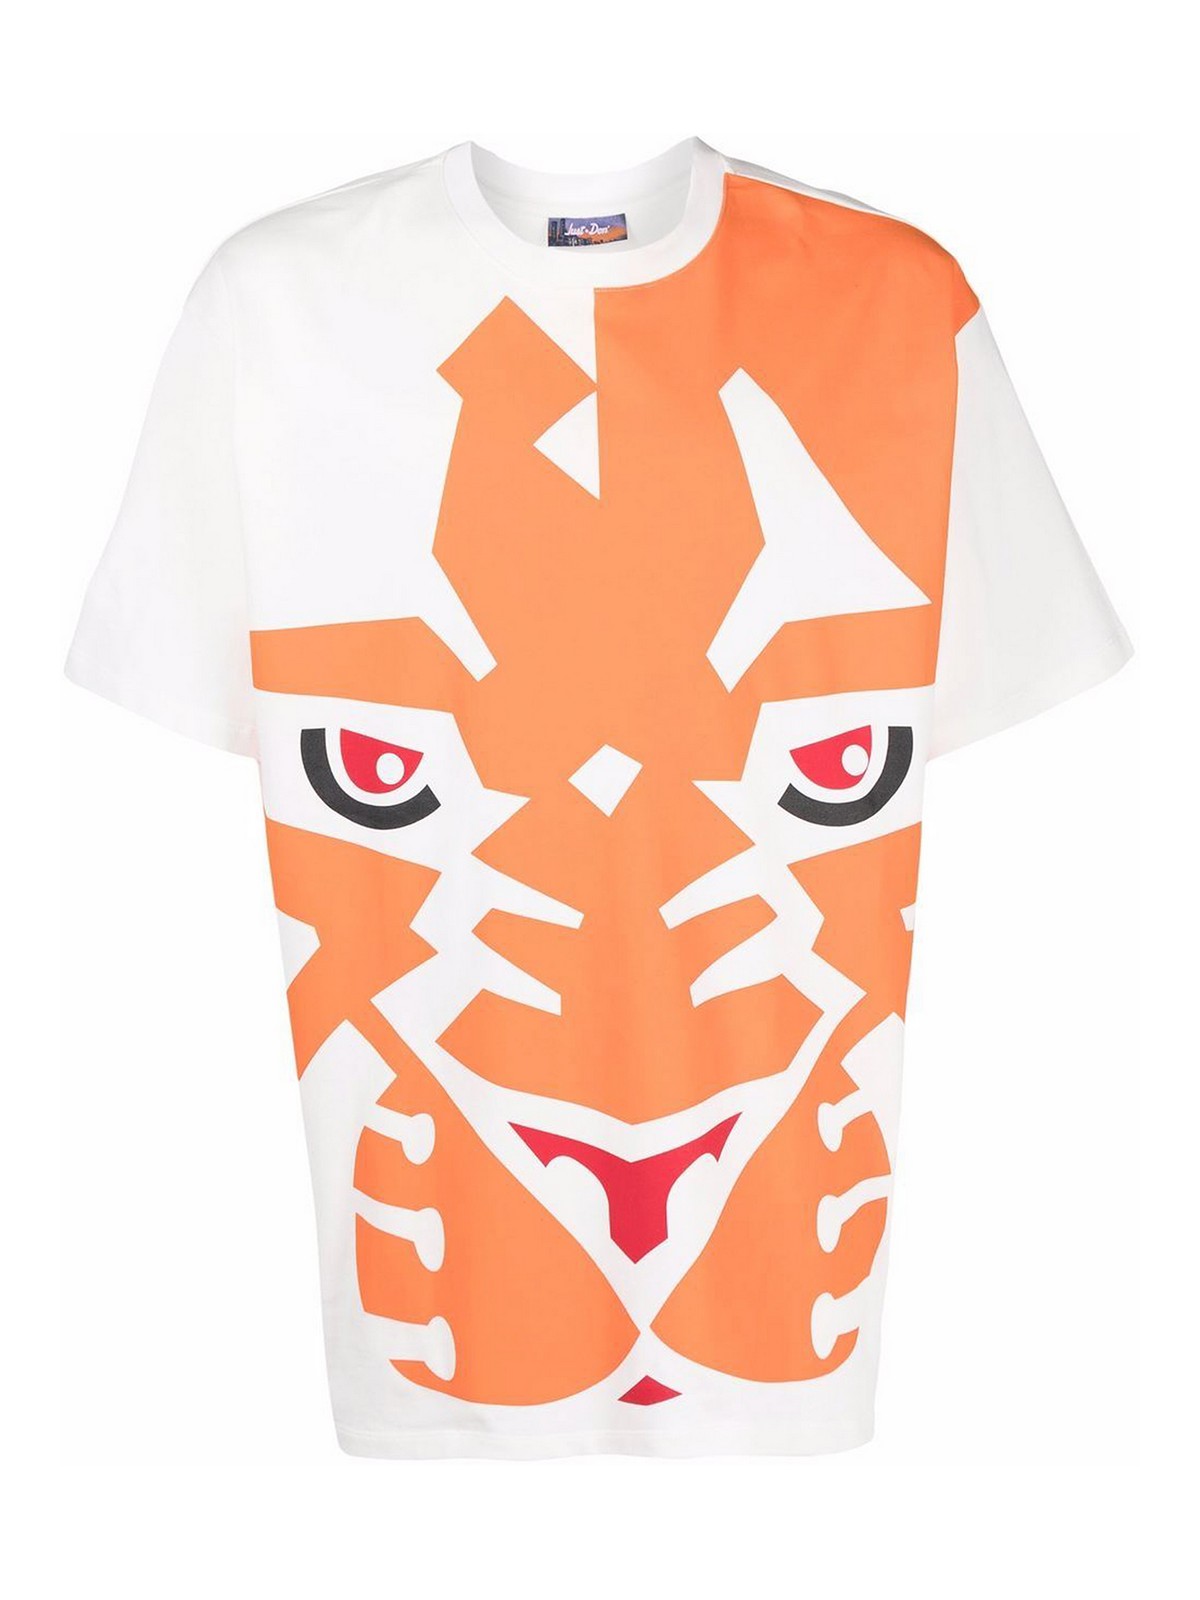 Kenzo White Cotton T-Shirt with Orange Tiger Print